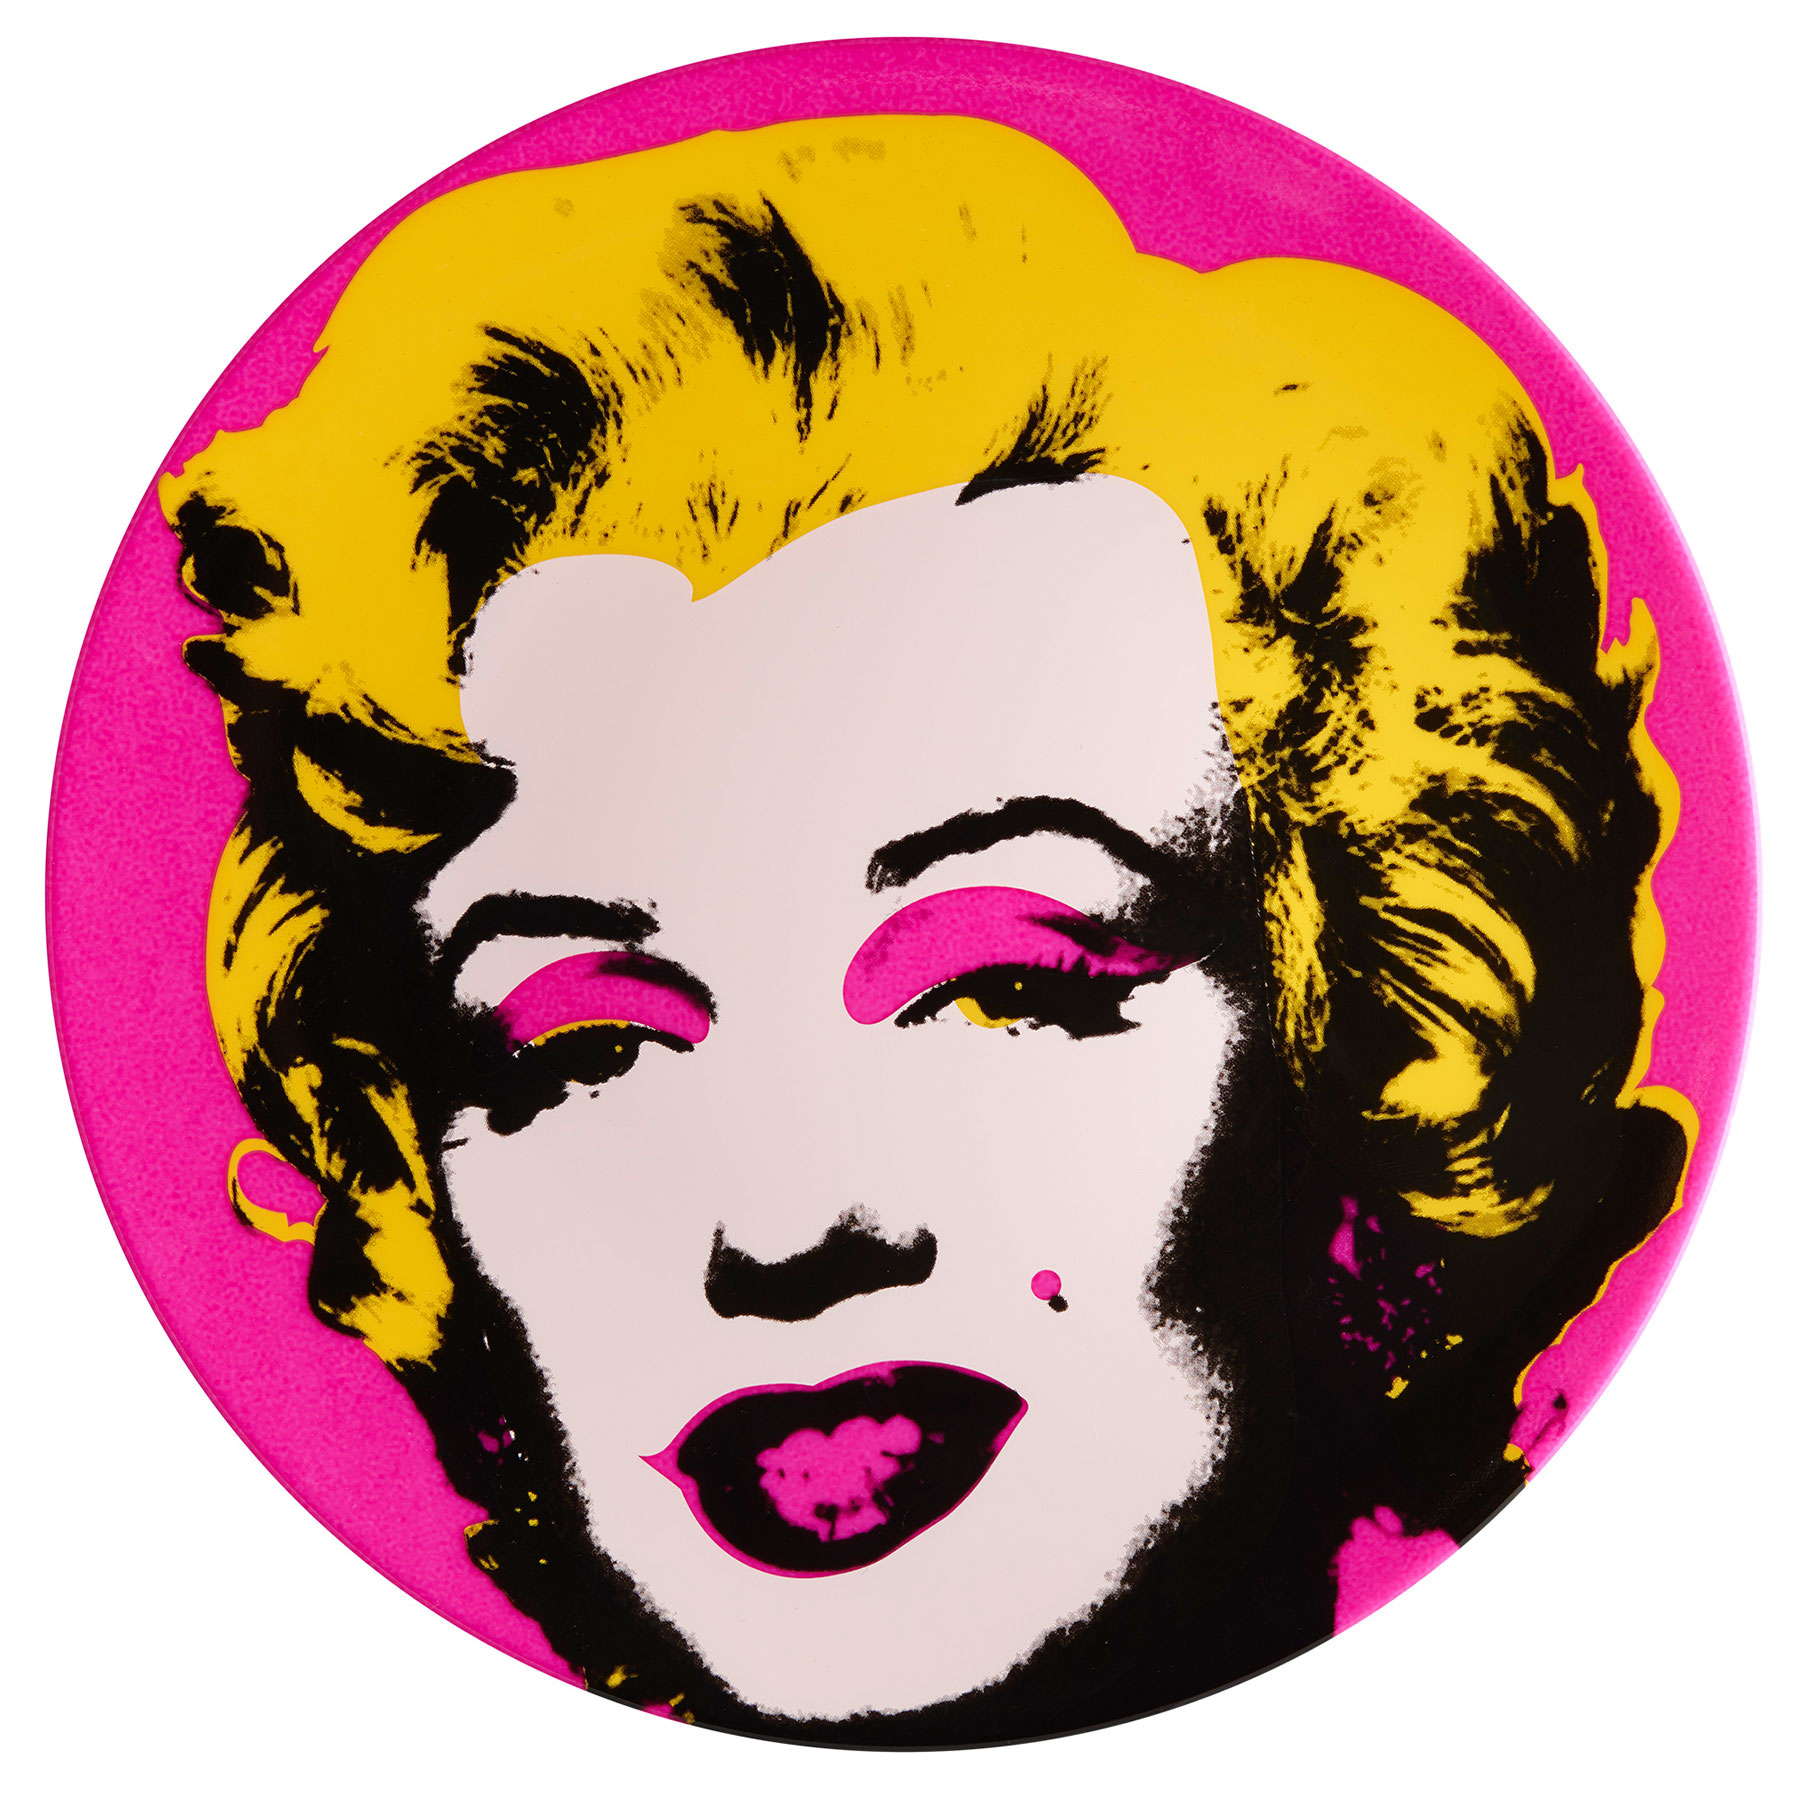 Porzellanteller "Marilyn" (Pink) von Andy Warhol